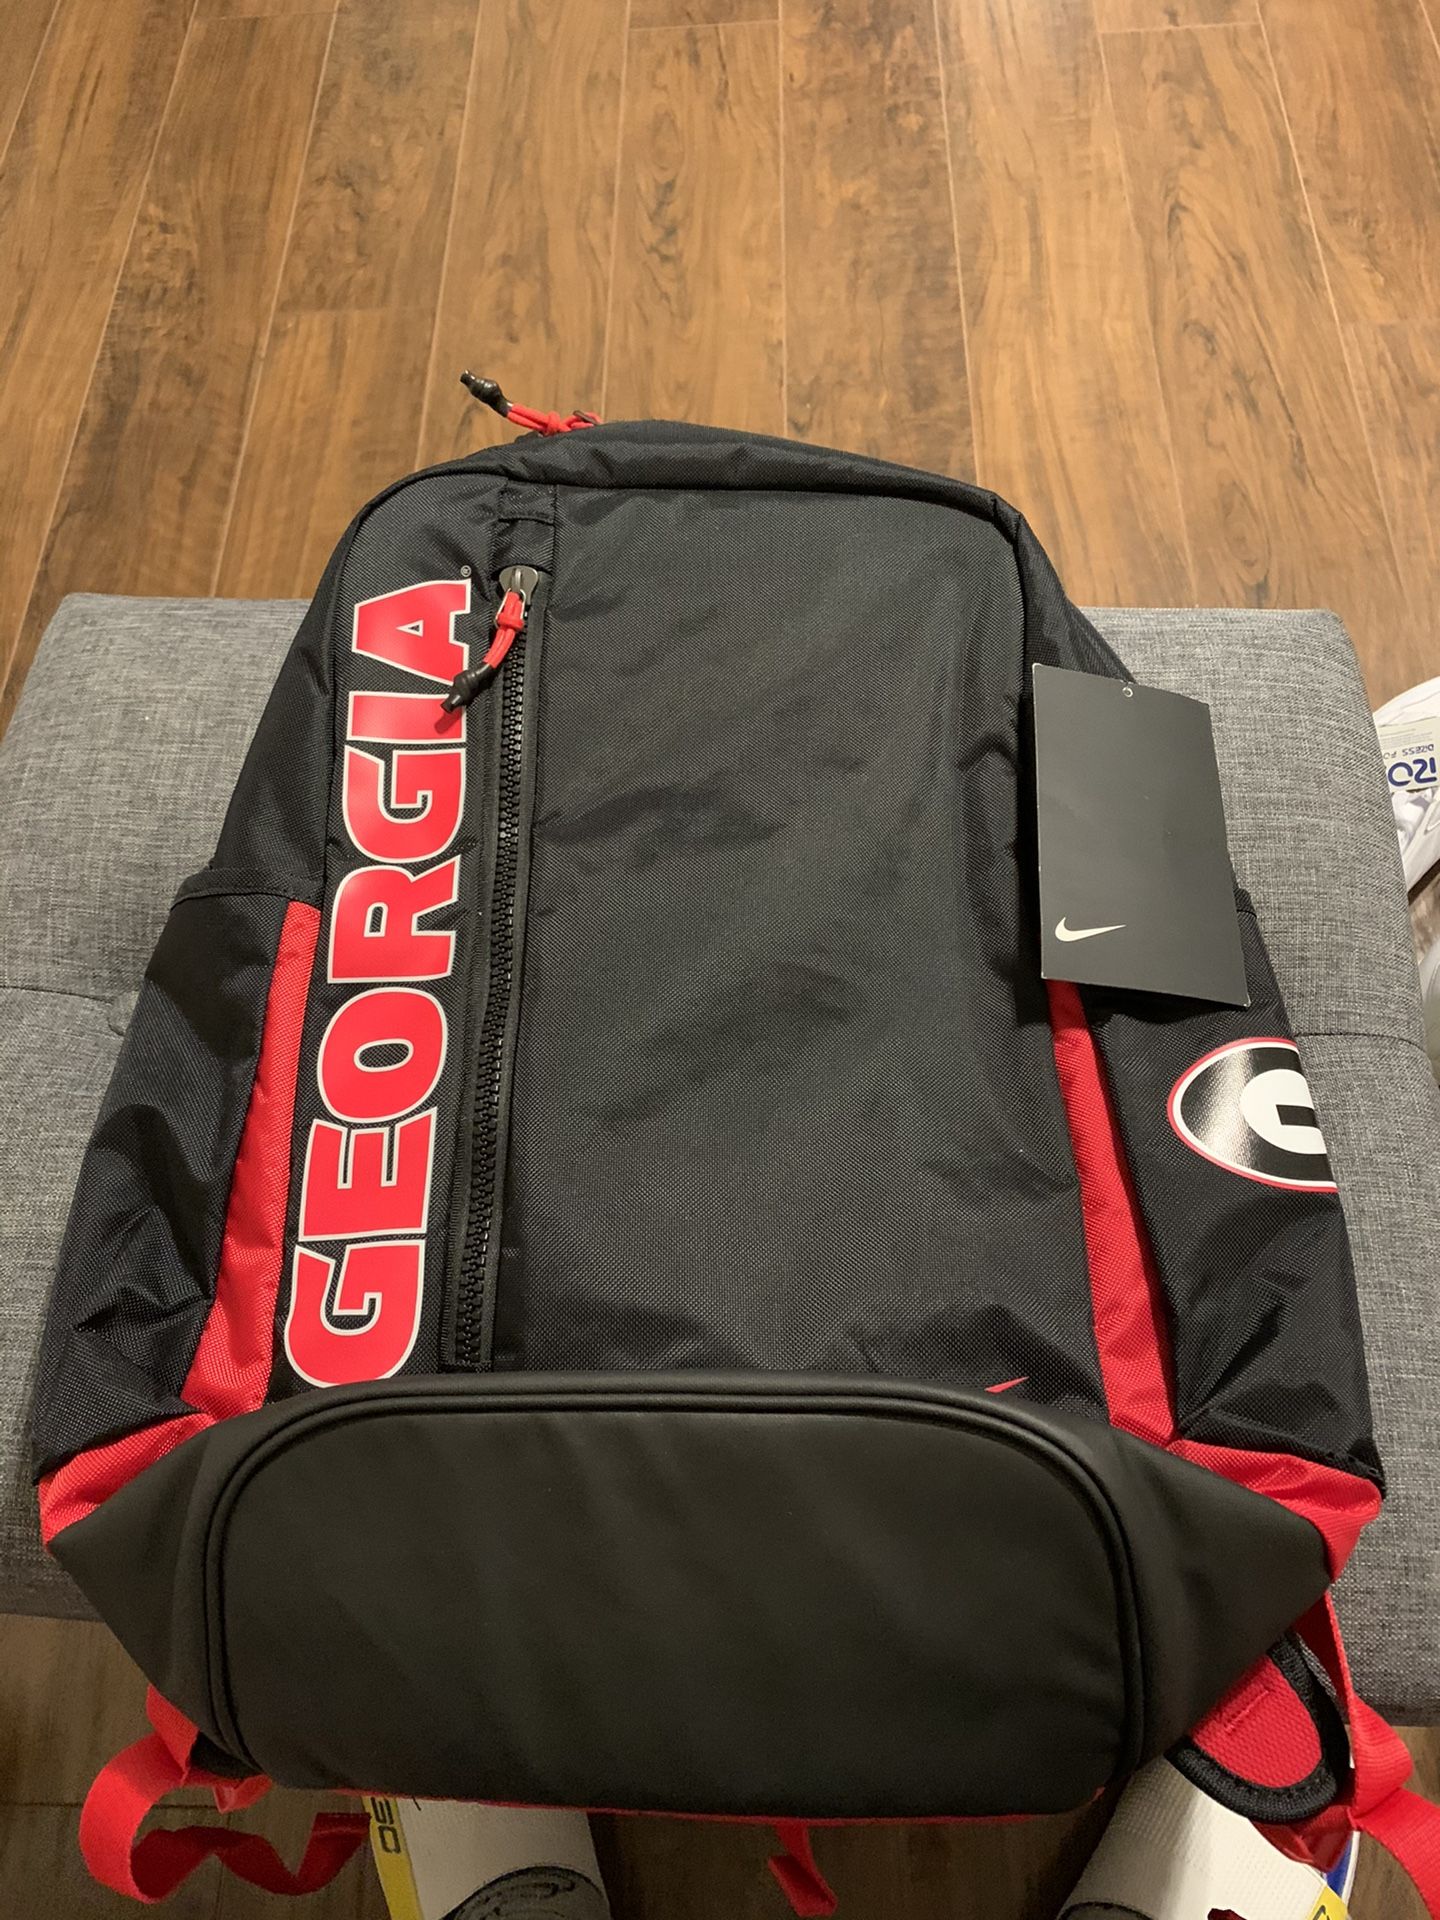 Georgia Bulldogs New Nike Backpack